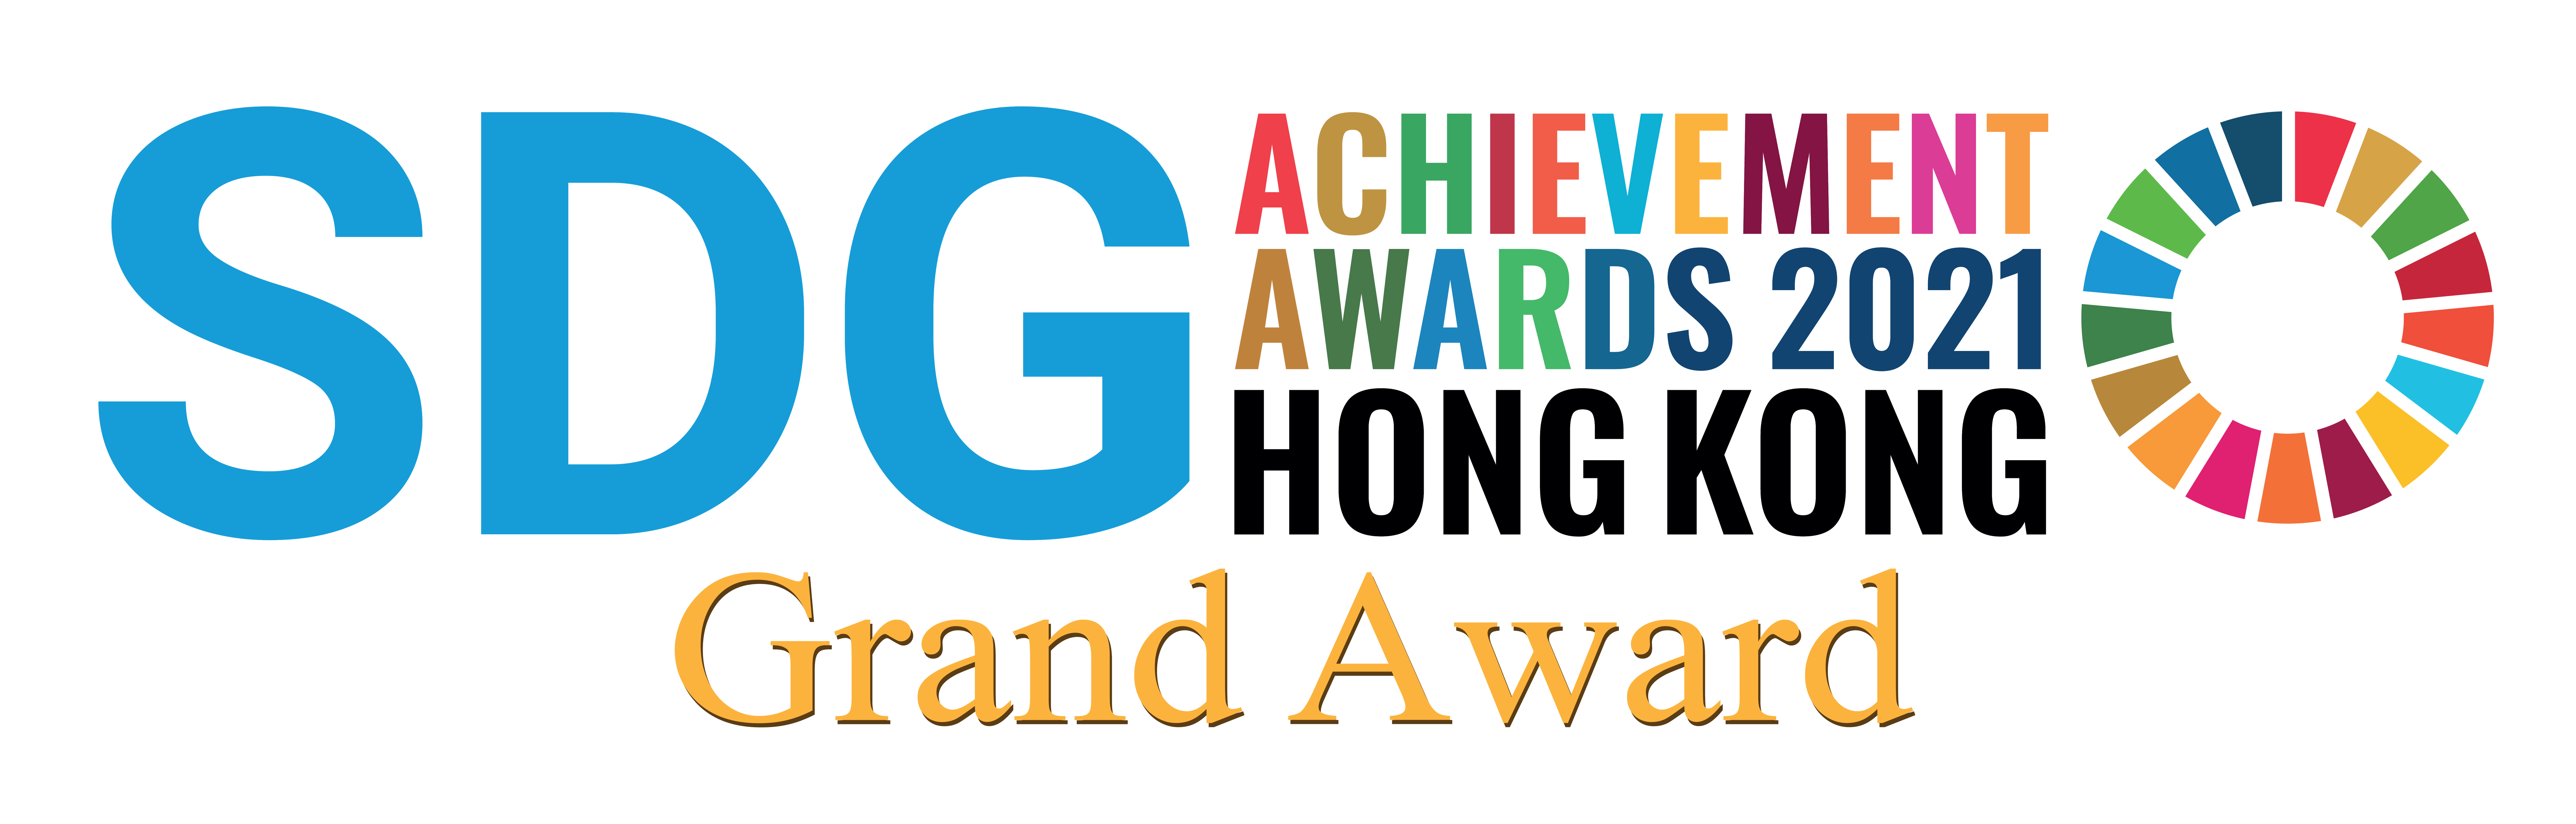 会展管理公司的“减塑行动”在环保促进会举办的“2021年联合国可持续发展目标香港成就奖”中获颁大奖、“持份者参与奖”及“最佳方法奖”